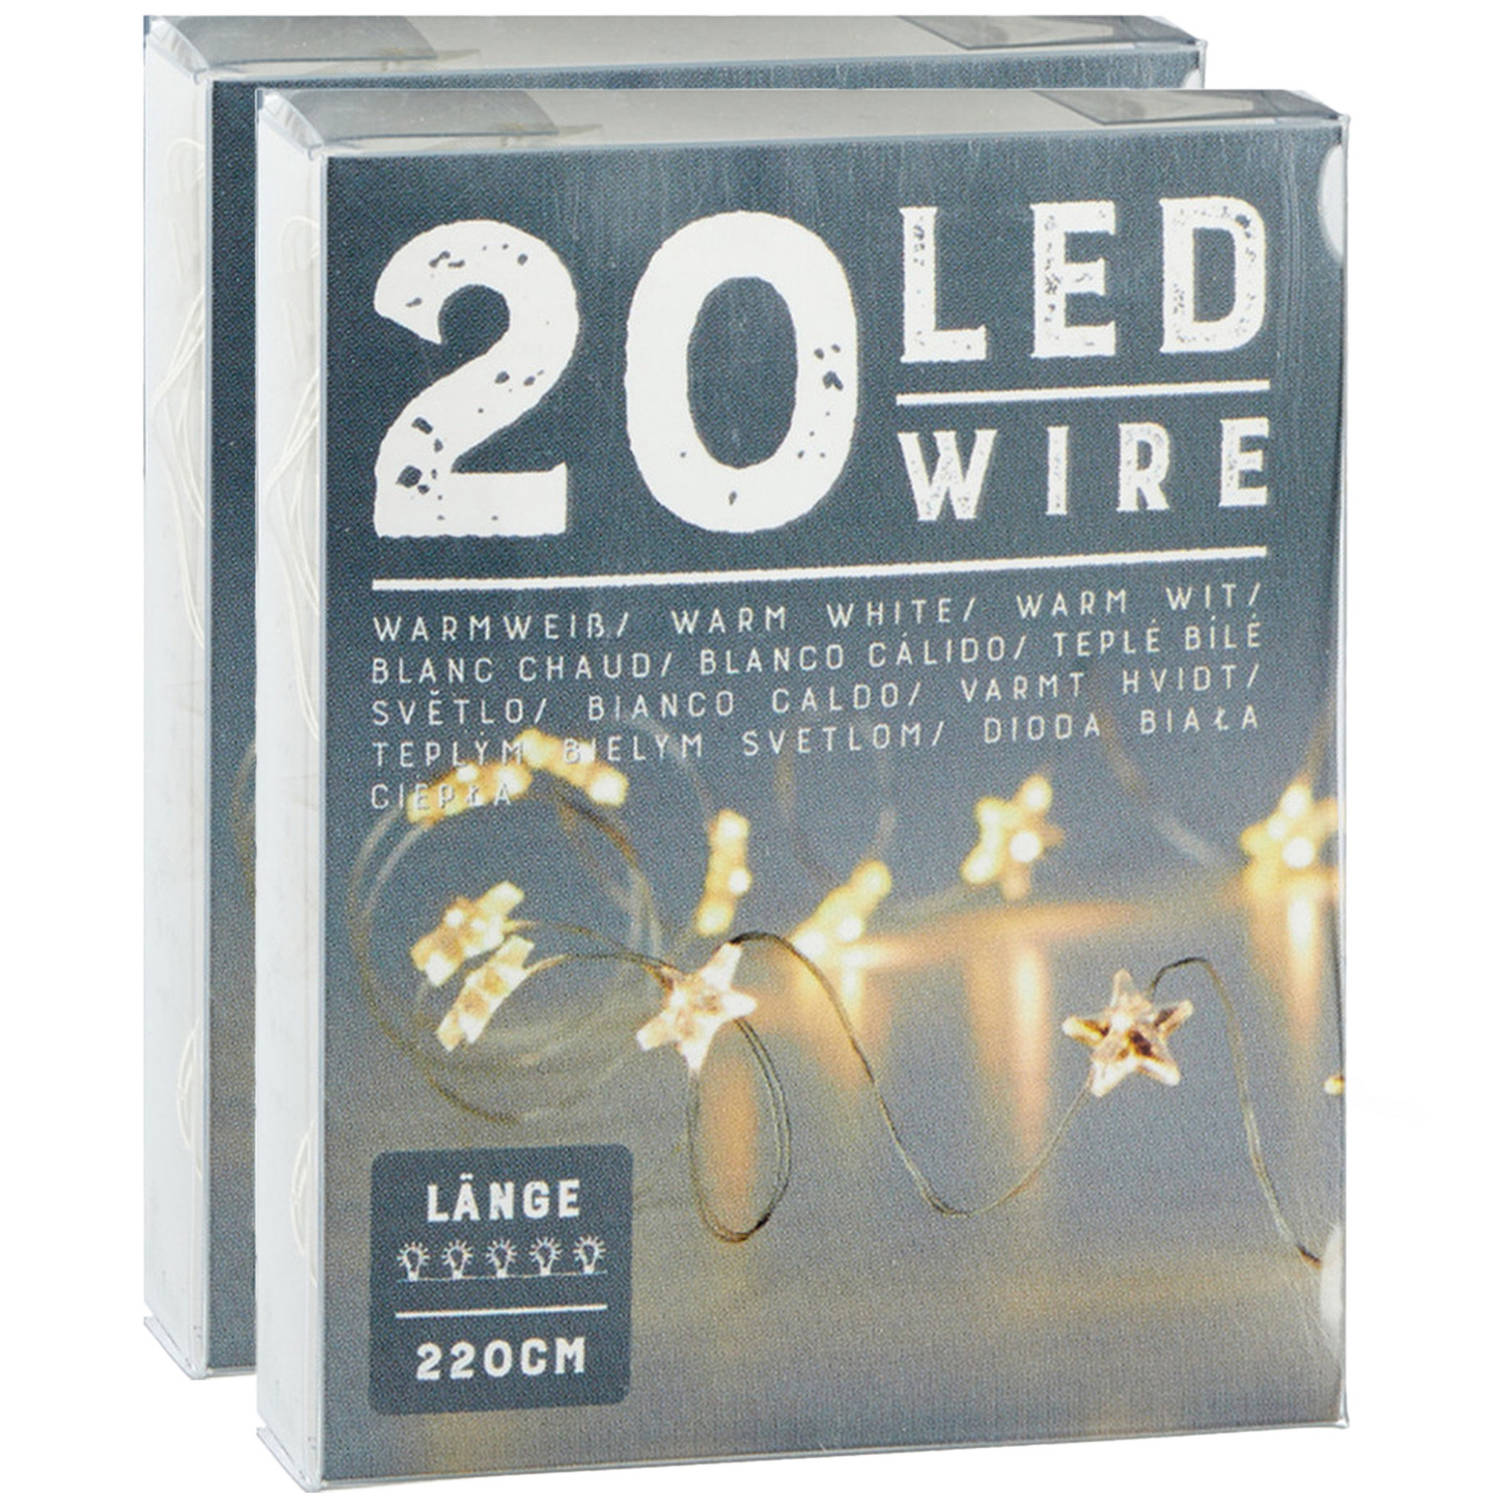 Lichtslingers/lichtsnoeren met sterretjes - 2 stuks - warm wit - 220 cm - Lichtsnoeren